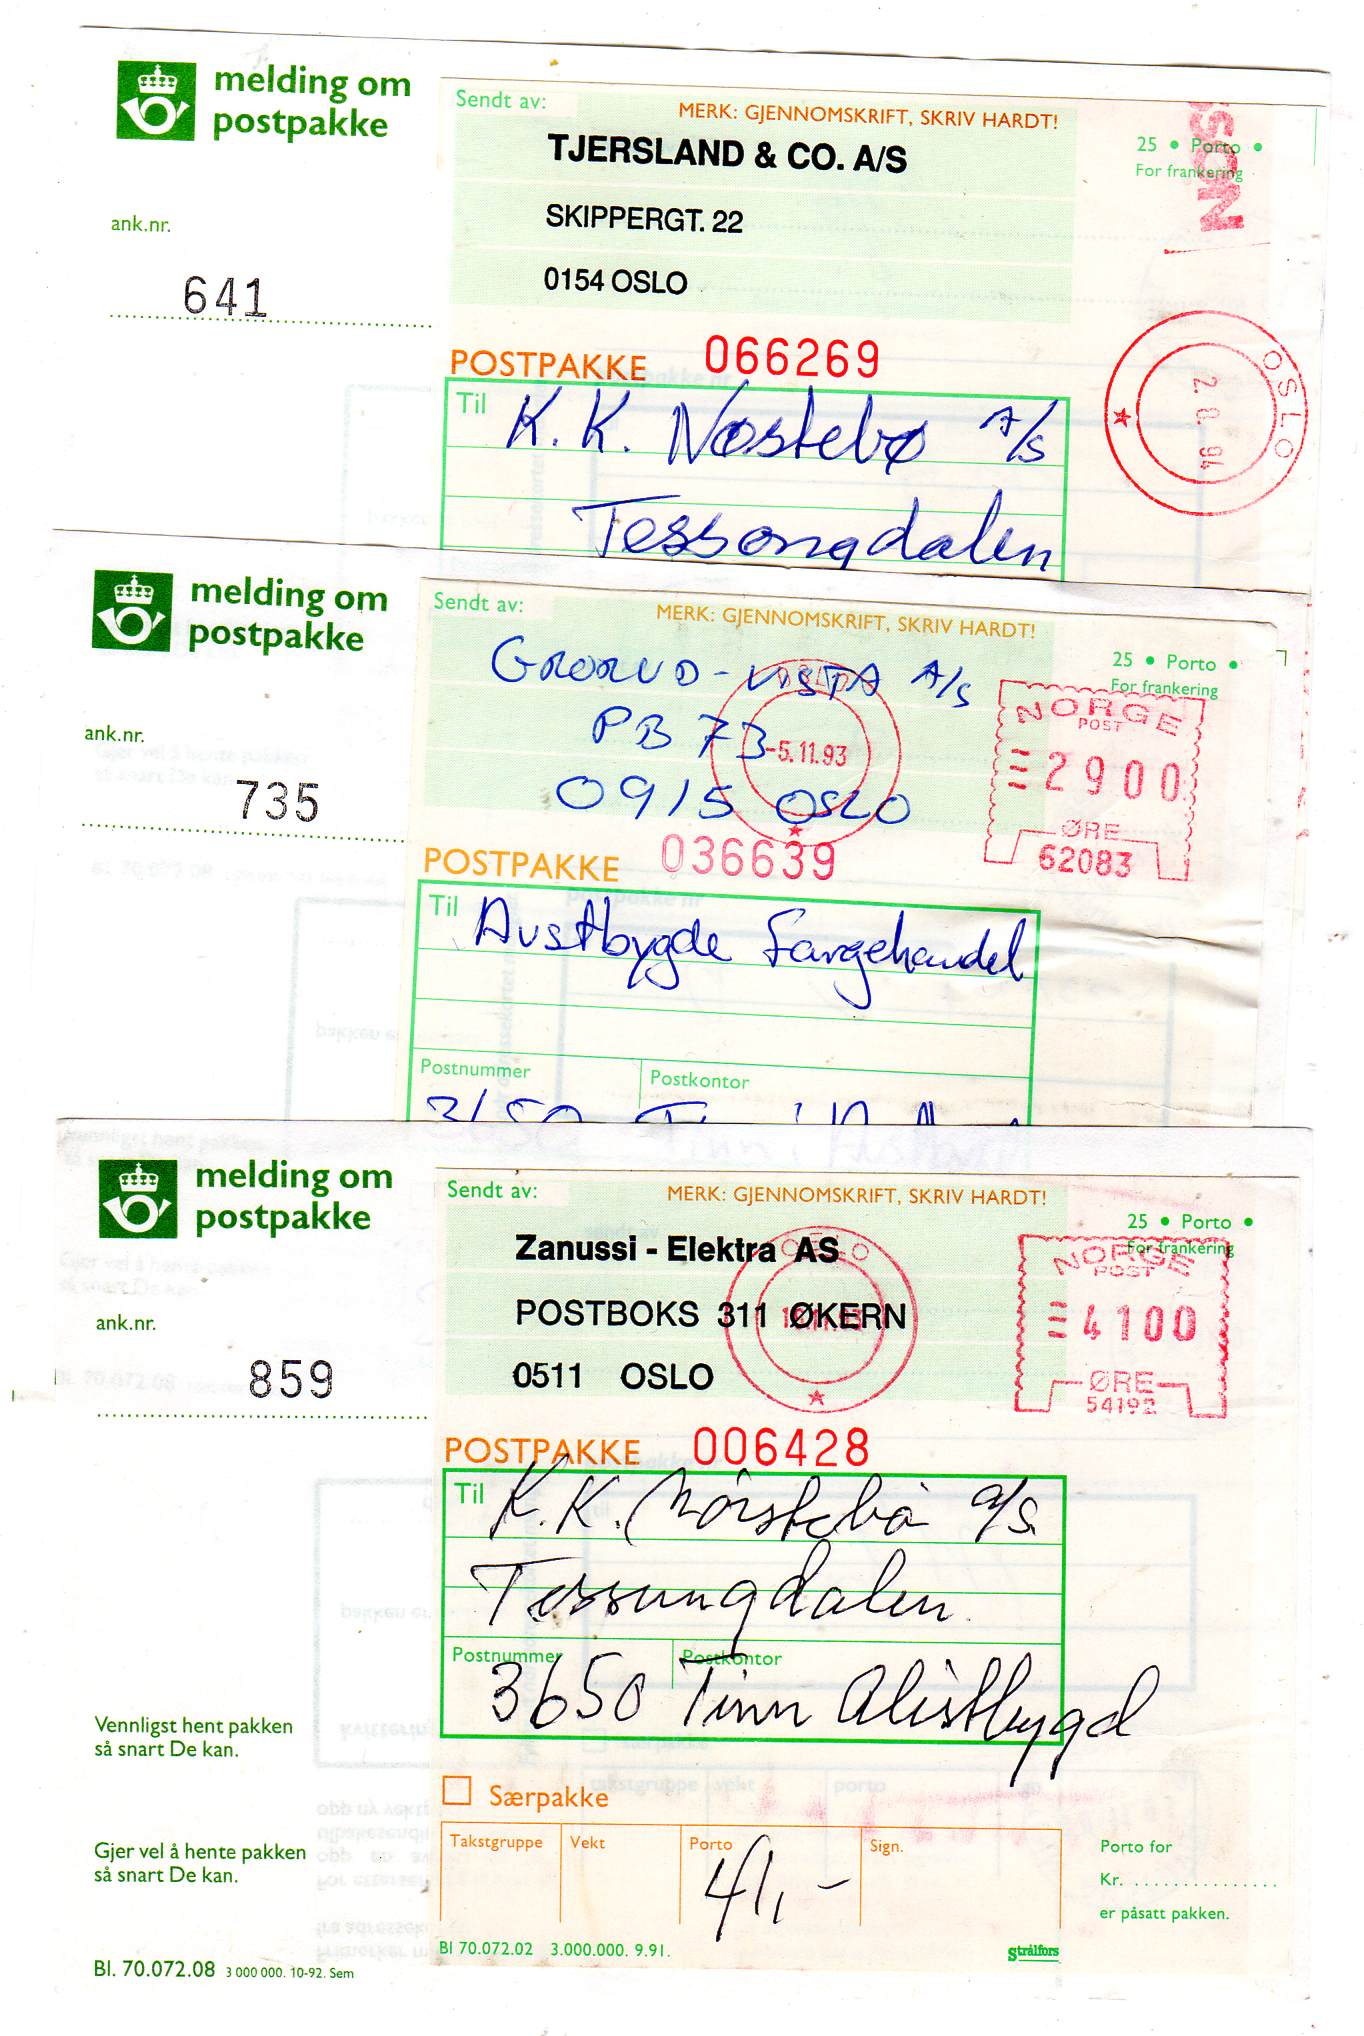 Melding om postpakke st Tinn Austbygd 1993/94